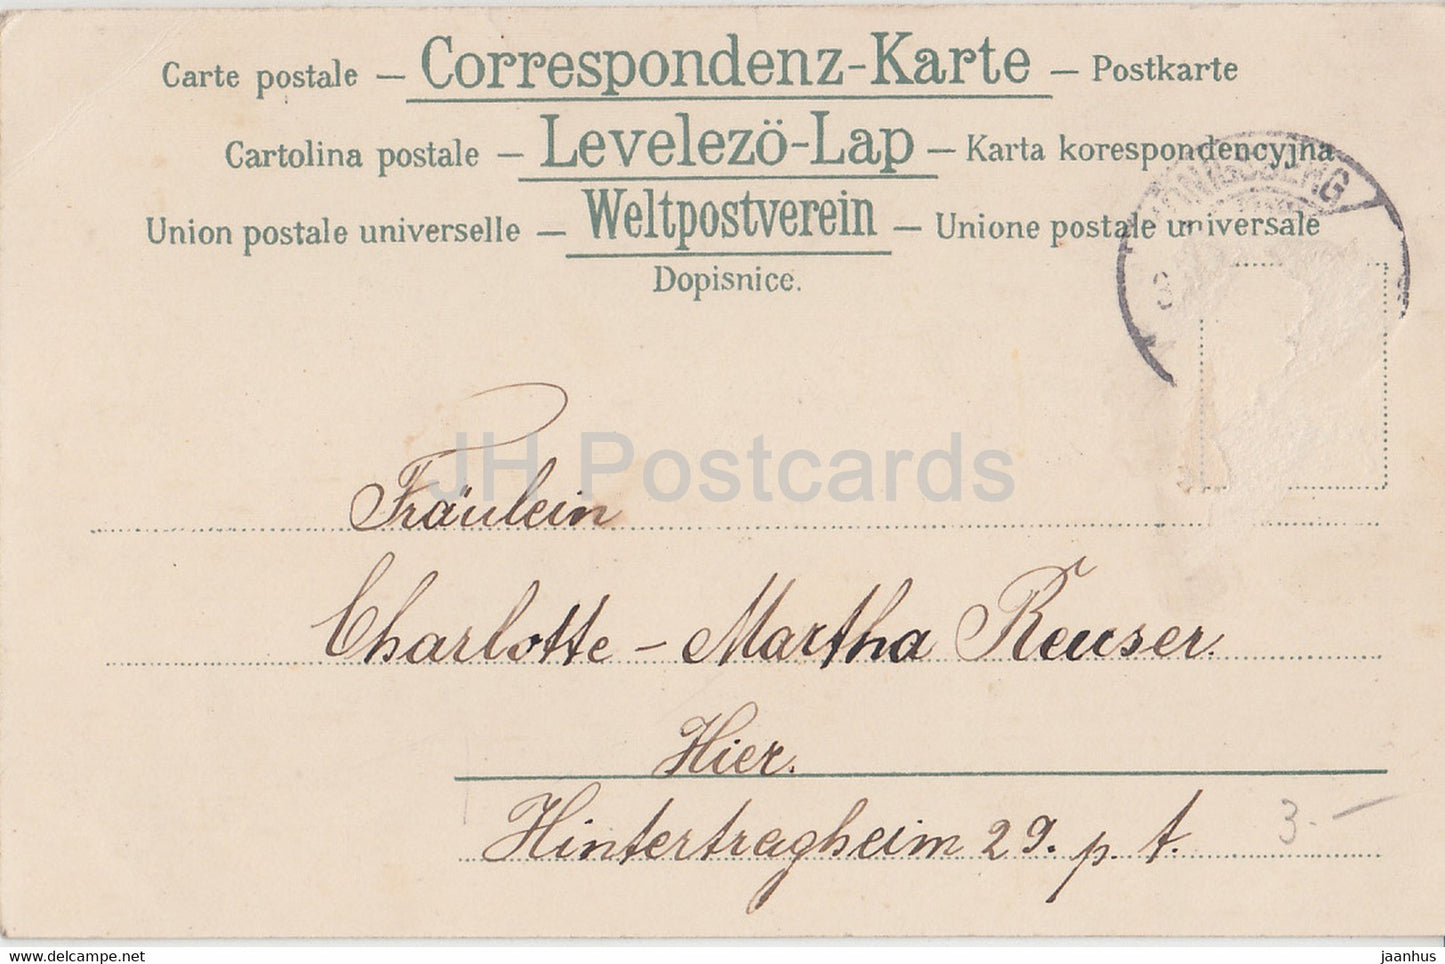 Carte de vœux du Nouvel An - Prosit Neujahr - femme assise - Série 202 - Theo Stroefer FW carte postale ancienne 1903 Allemagne - utilisé